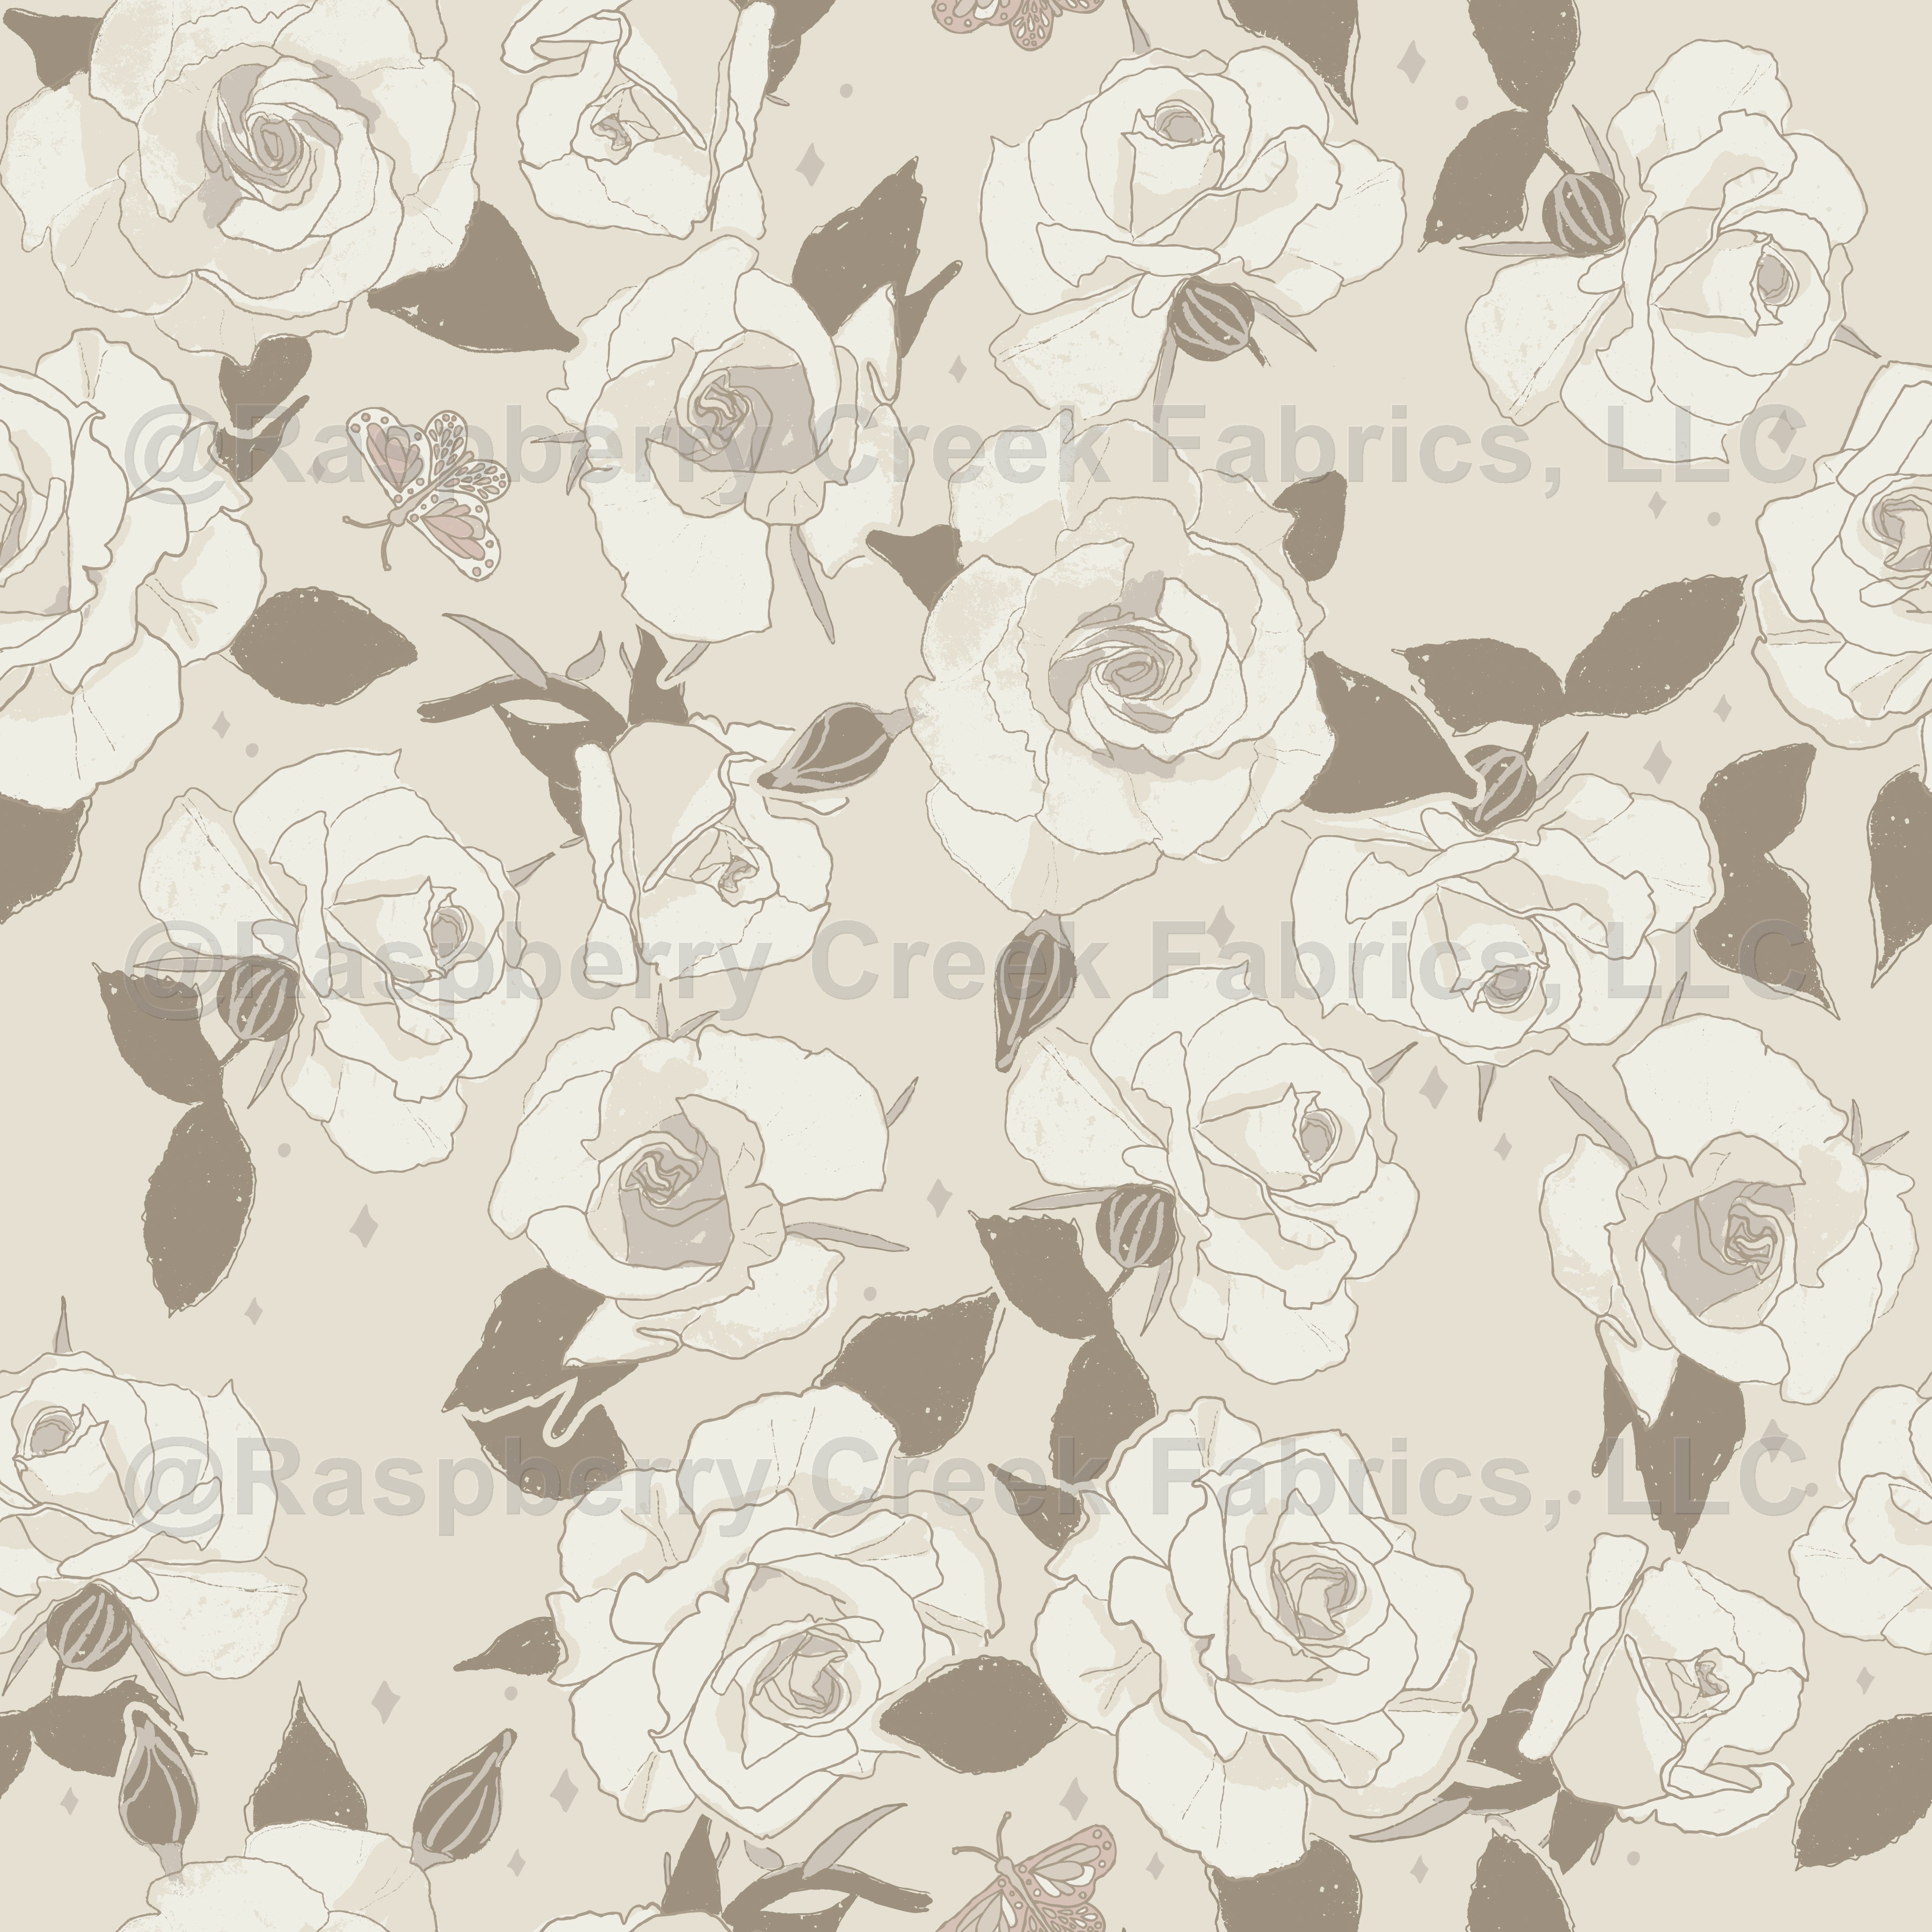 Garden Roses w/butterflies Wallpaper - Greige Wallpaper, Raspberry Creek Fabrics, watermarked